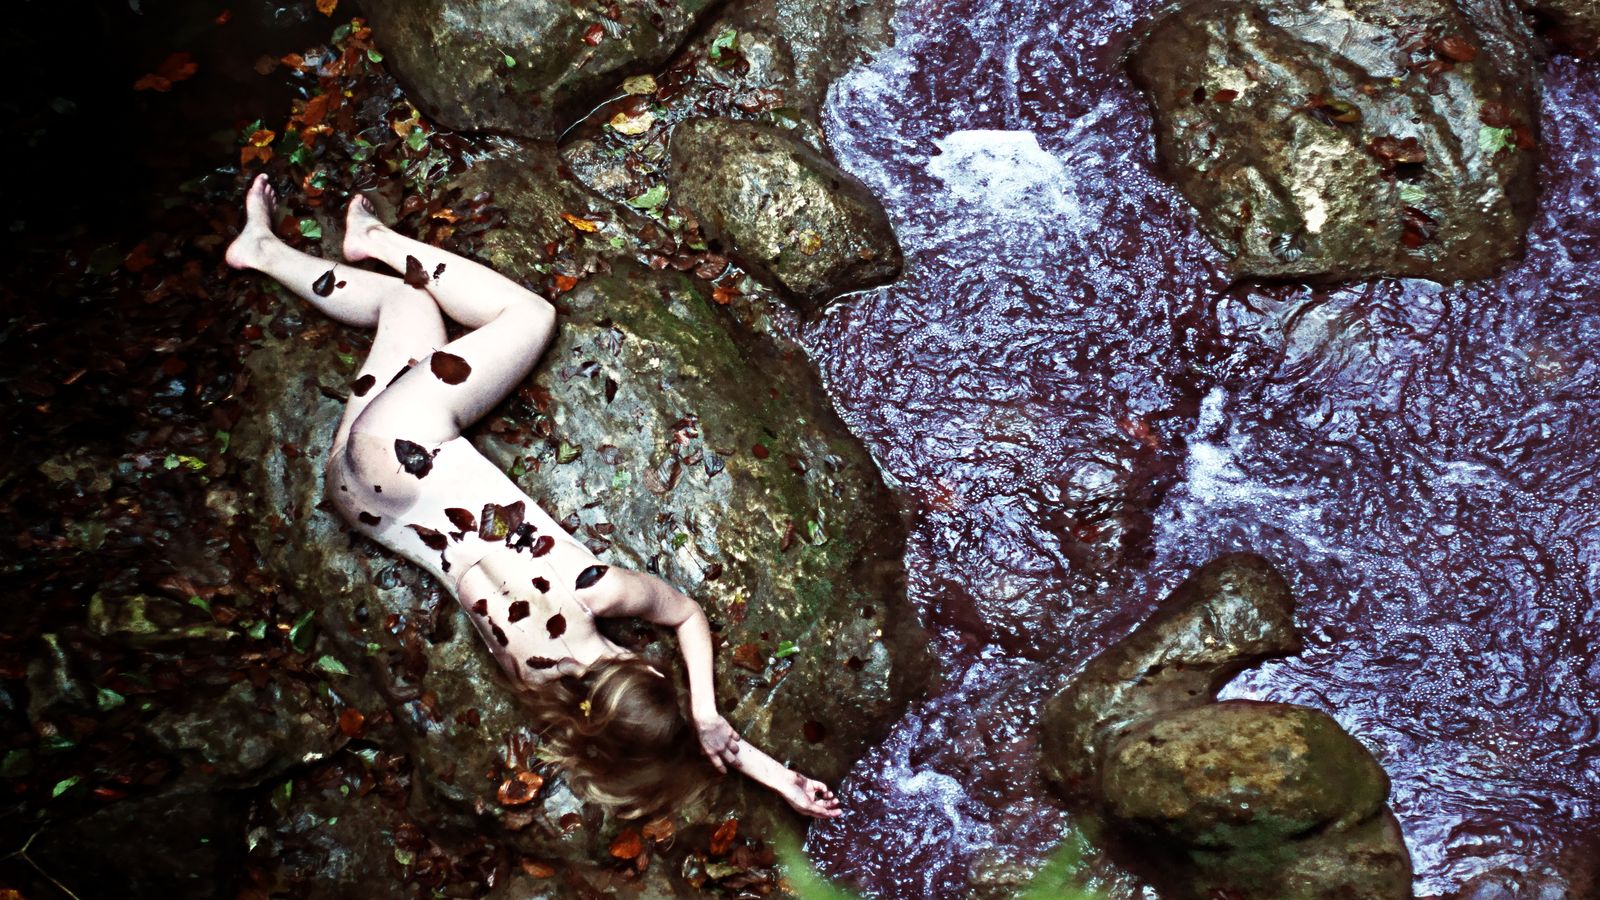 Le corps bleuté d'Hata semble avoir été abandonné sur une pierre plate de cette rivière du Buget. Des feuilles mortes sont collées sur le corps de la noyée.